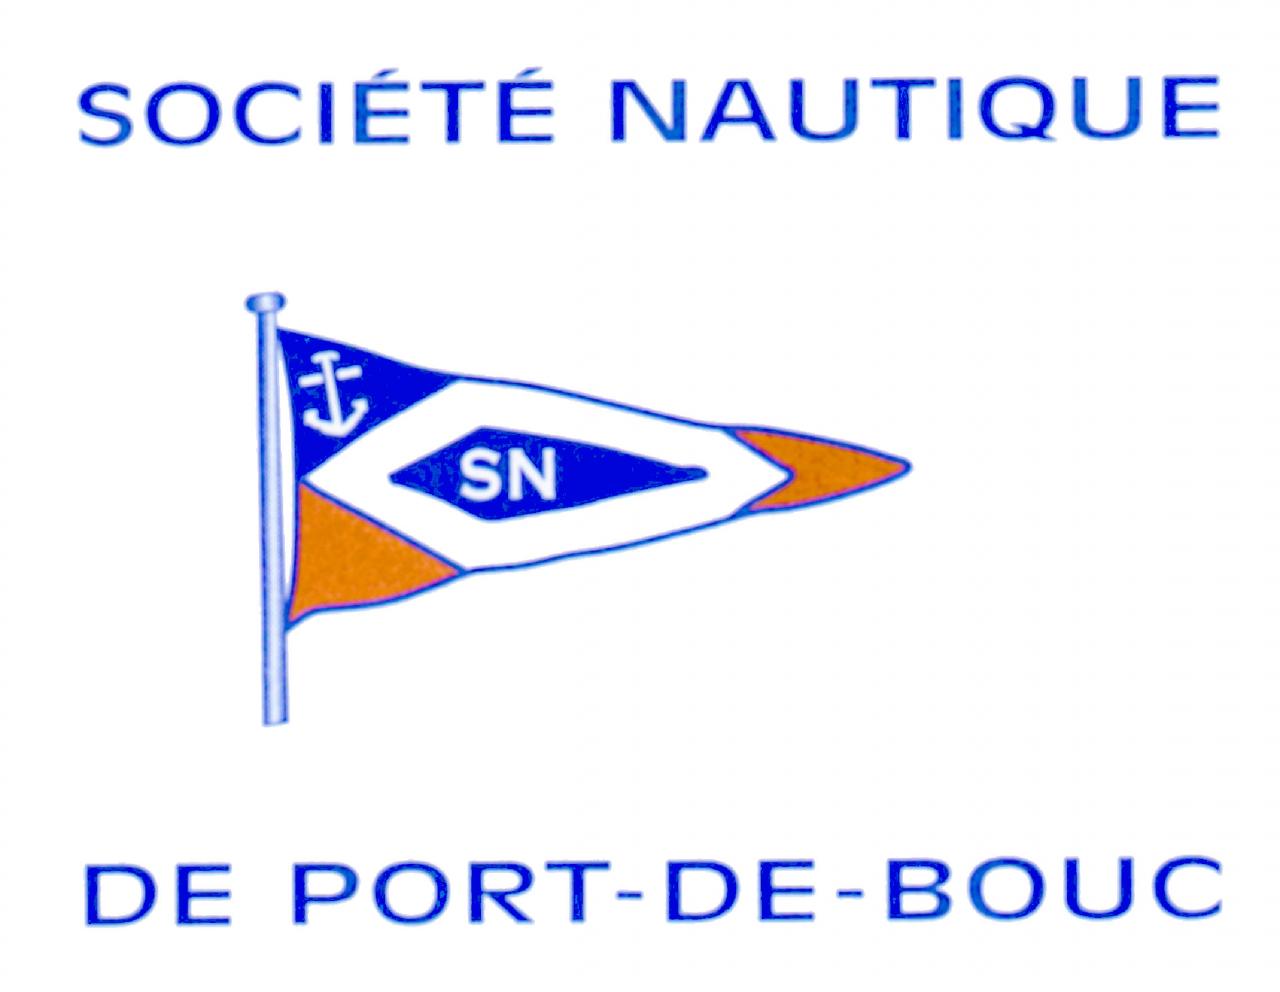 SOCIETE NAUTIQUE DE PORT DE BOUC